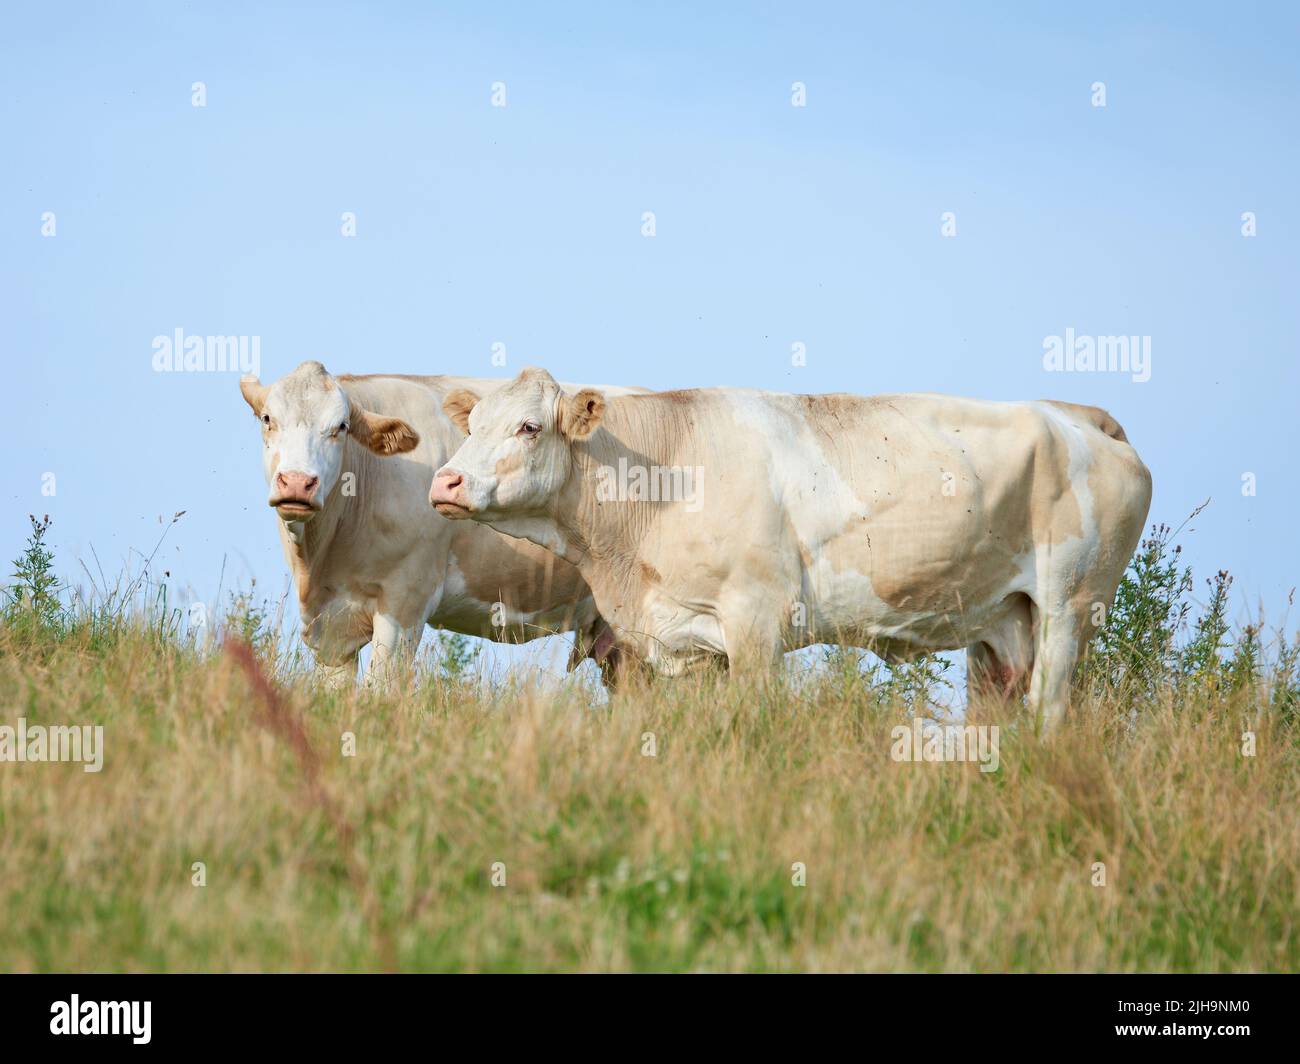 Viehzucht und Viehzucht auf einem Bauernhof für die Rind- und Milchindustrie. Landschaftstiere auf Weiden oder Weiden. Zwei weiße Kühe stehen darauf Stockfoto